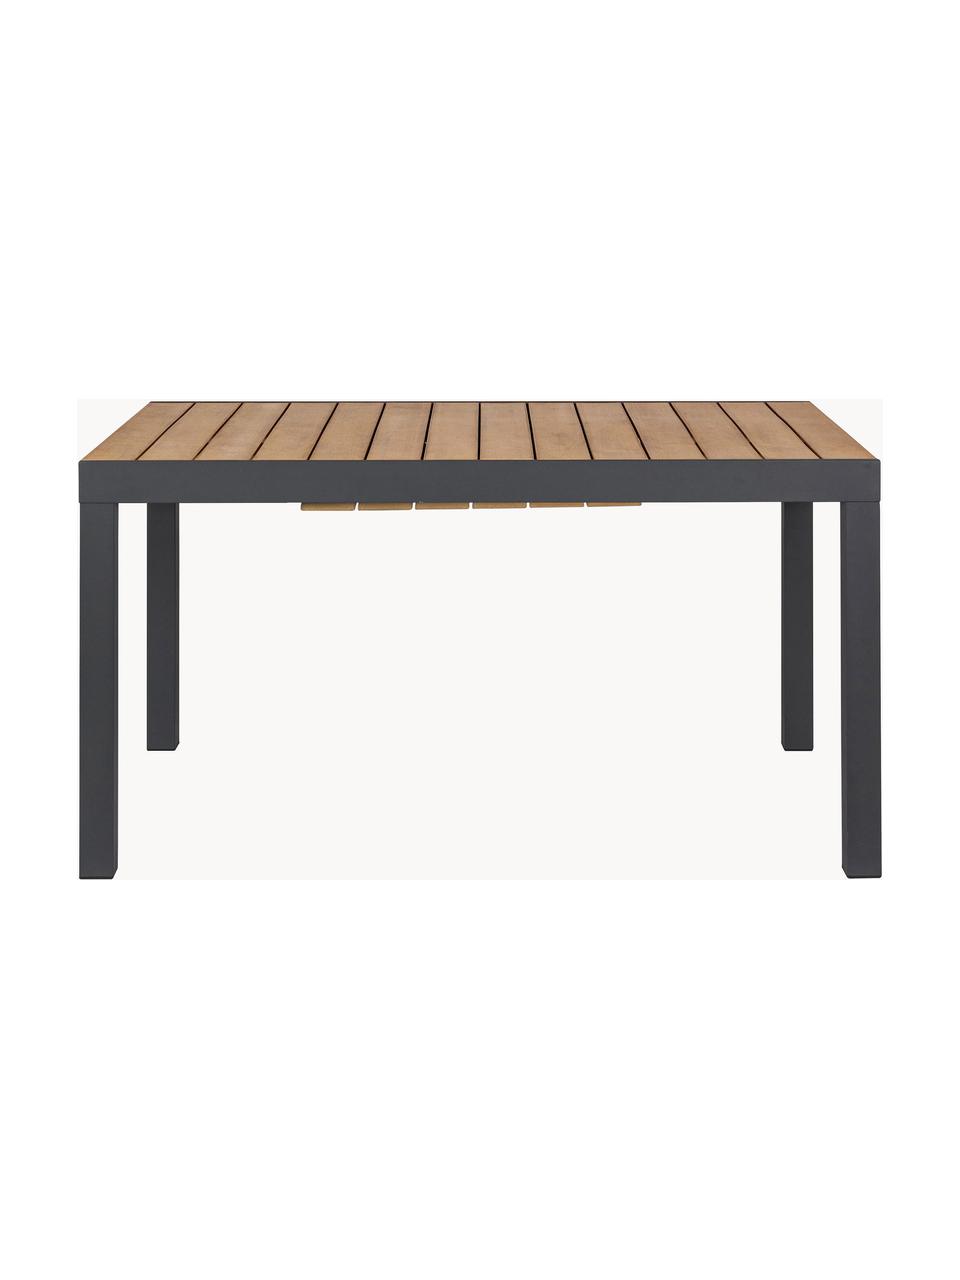 Tavolo da giardino allungabile Elias 140 - 200 x 90 cm, Struttura: alluminio verniciato a po, Legno, antracite, Larg. 140/200 x Prof. 90 cm